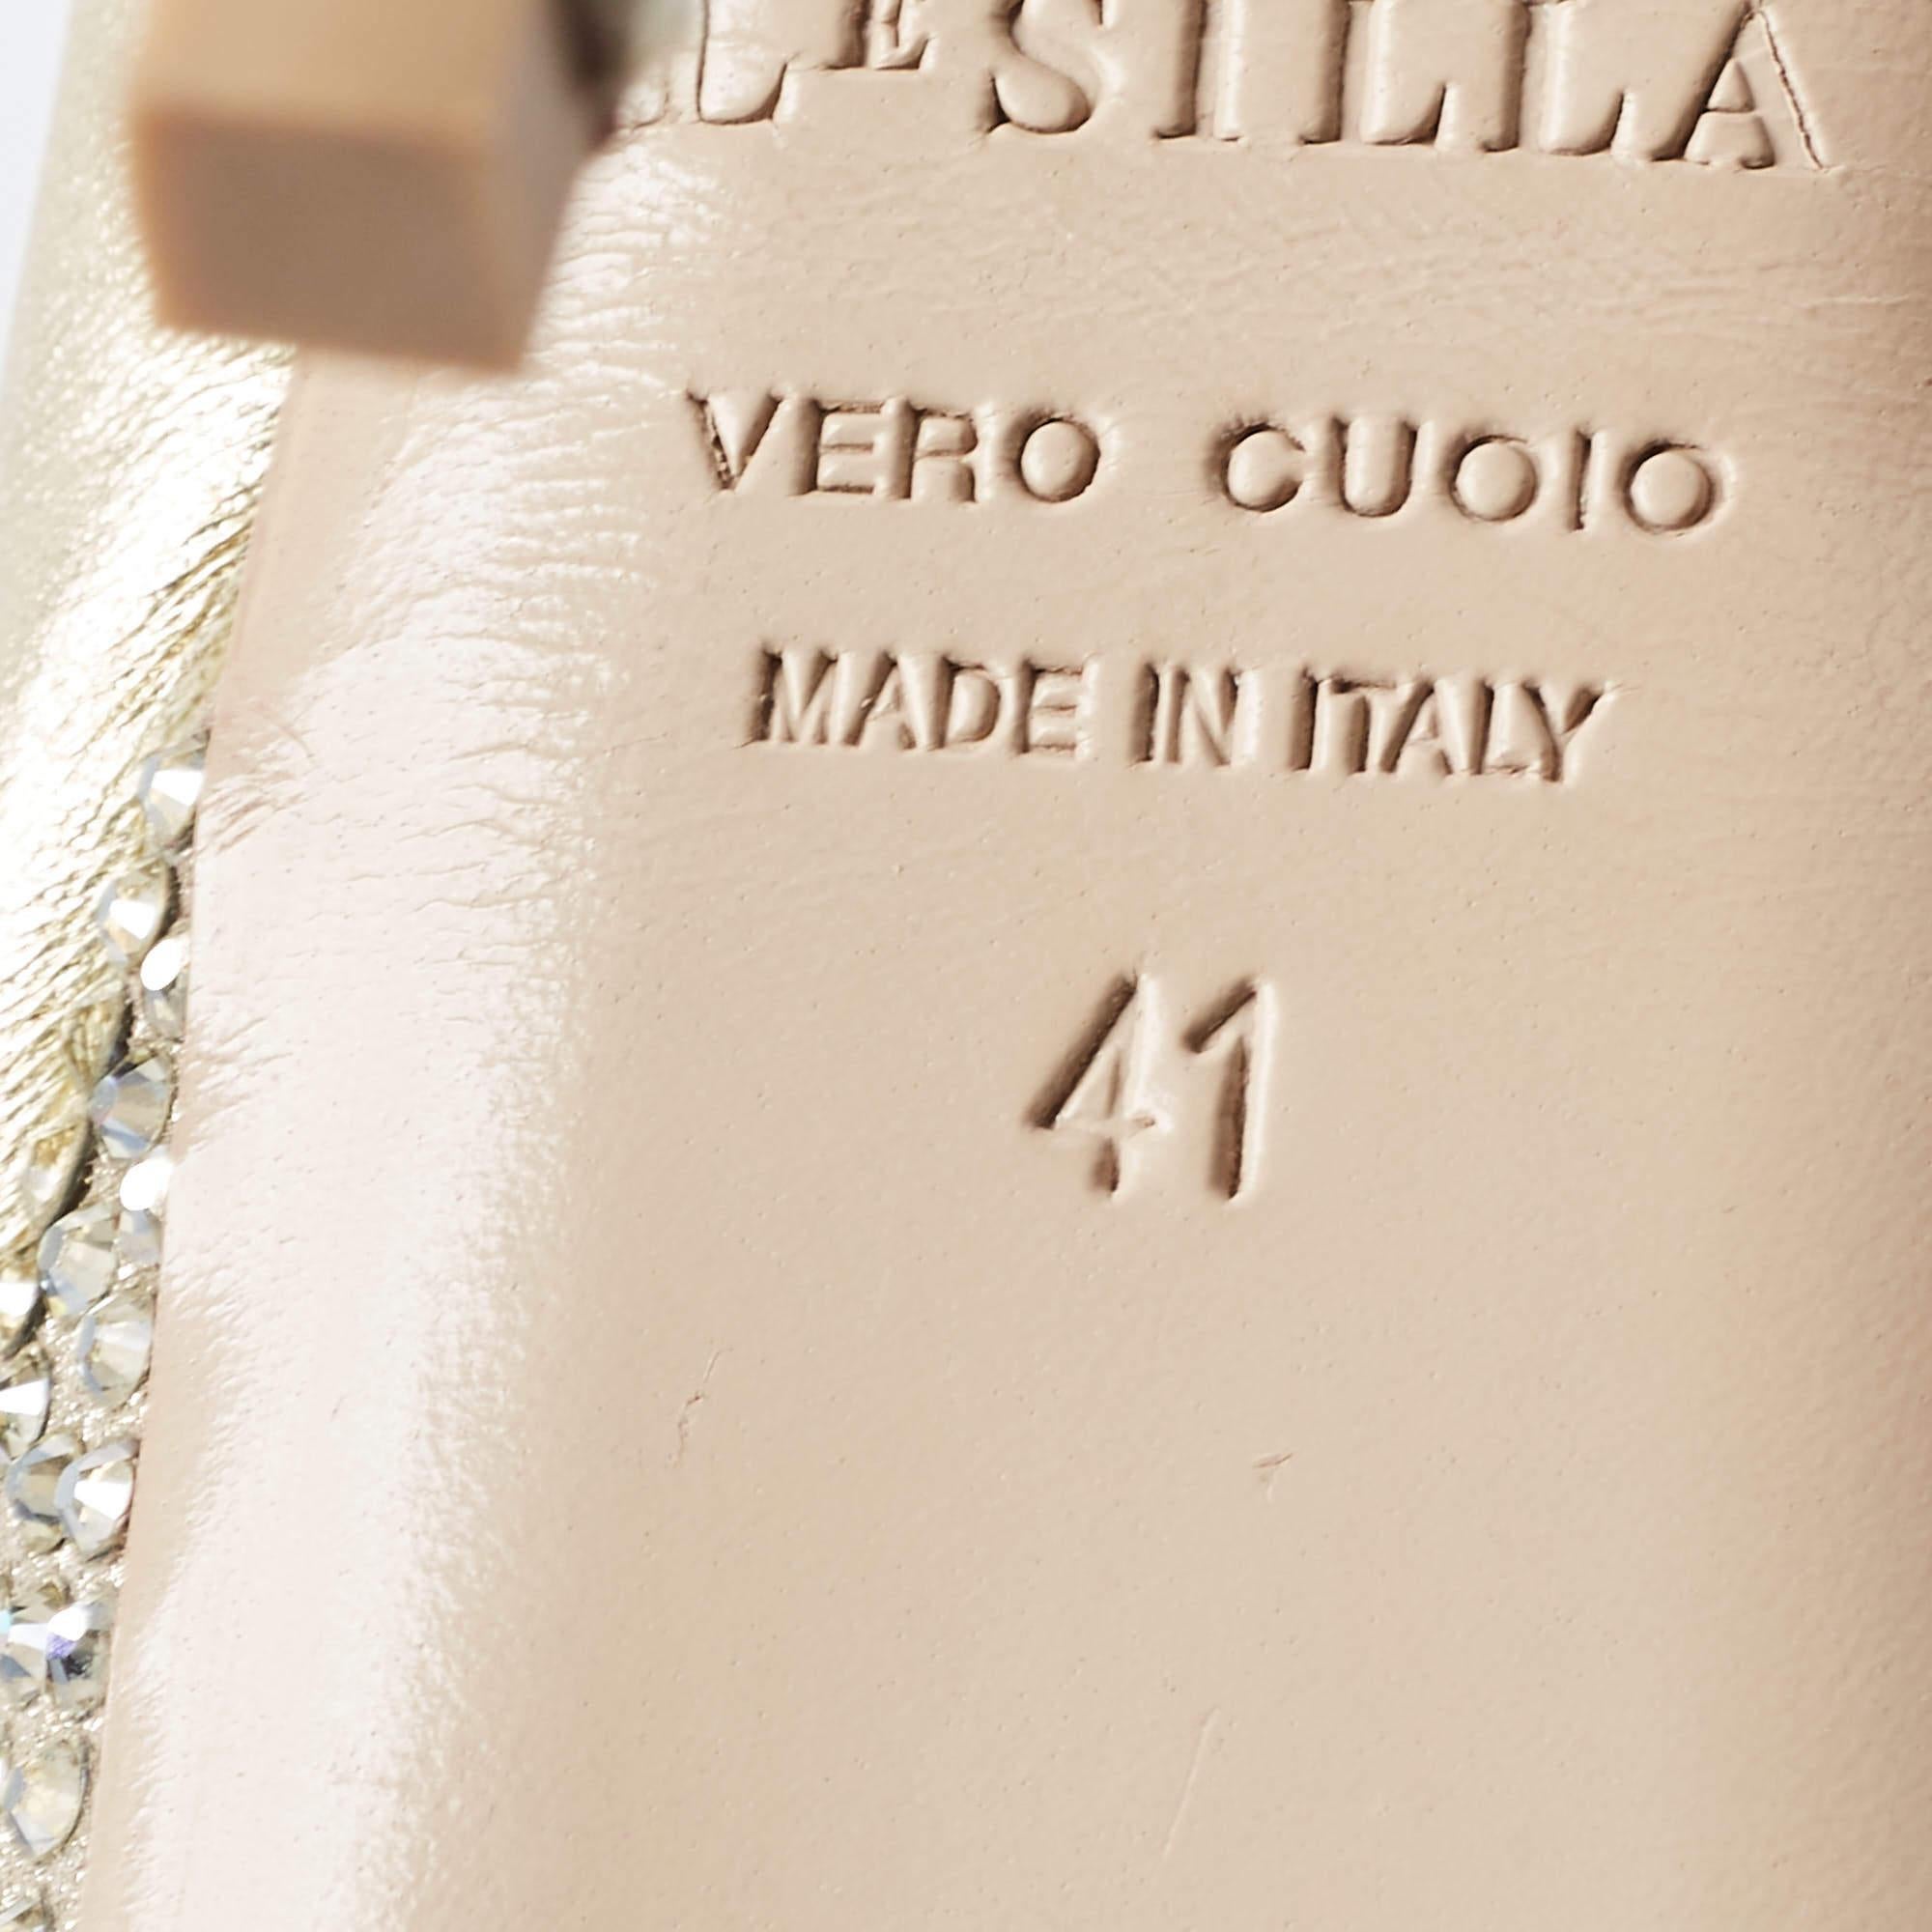 Le Silla Golden Leather Crystal Embellished Platform Peep Toe Pumps Size 41 For Sale 2